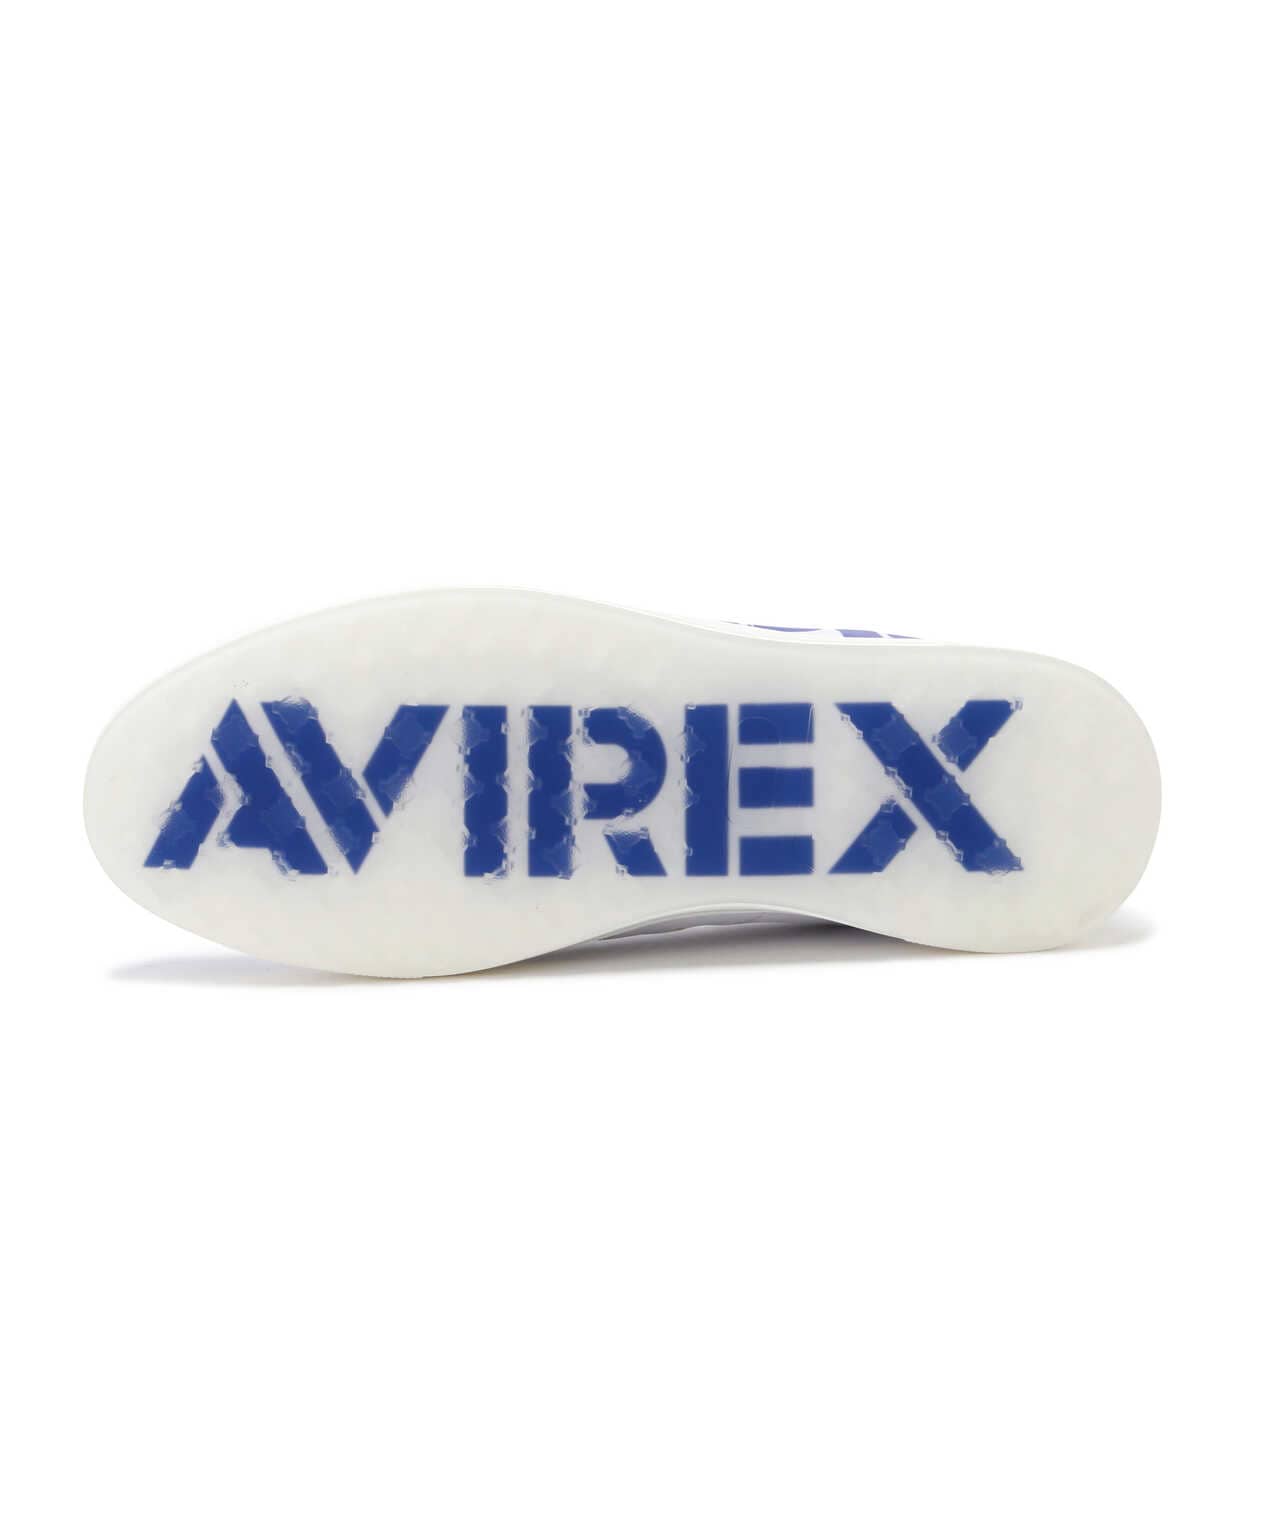 AVIREX GOLF》スパイクレス シューズ/ゴルフ | AVIREX